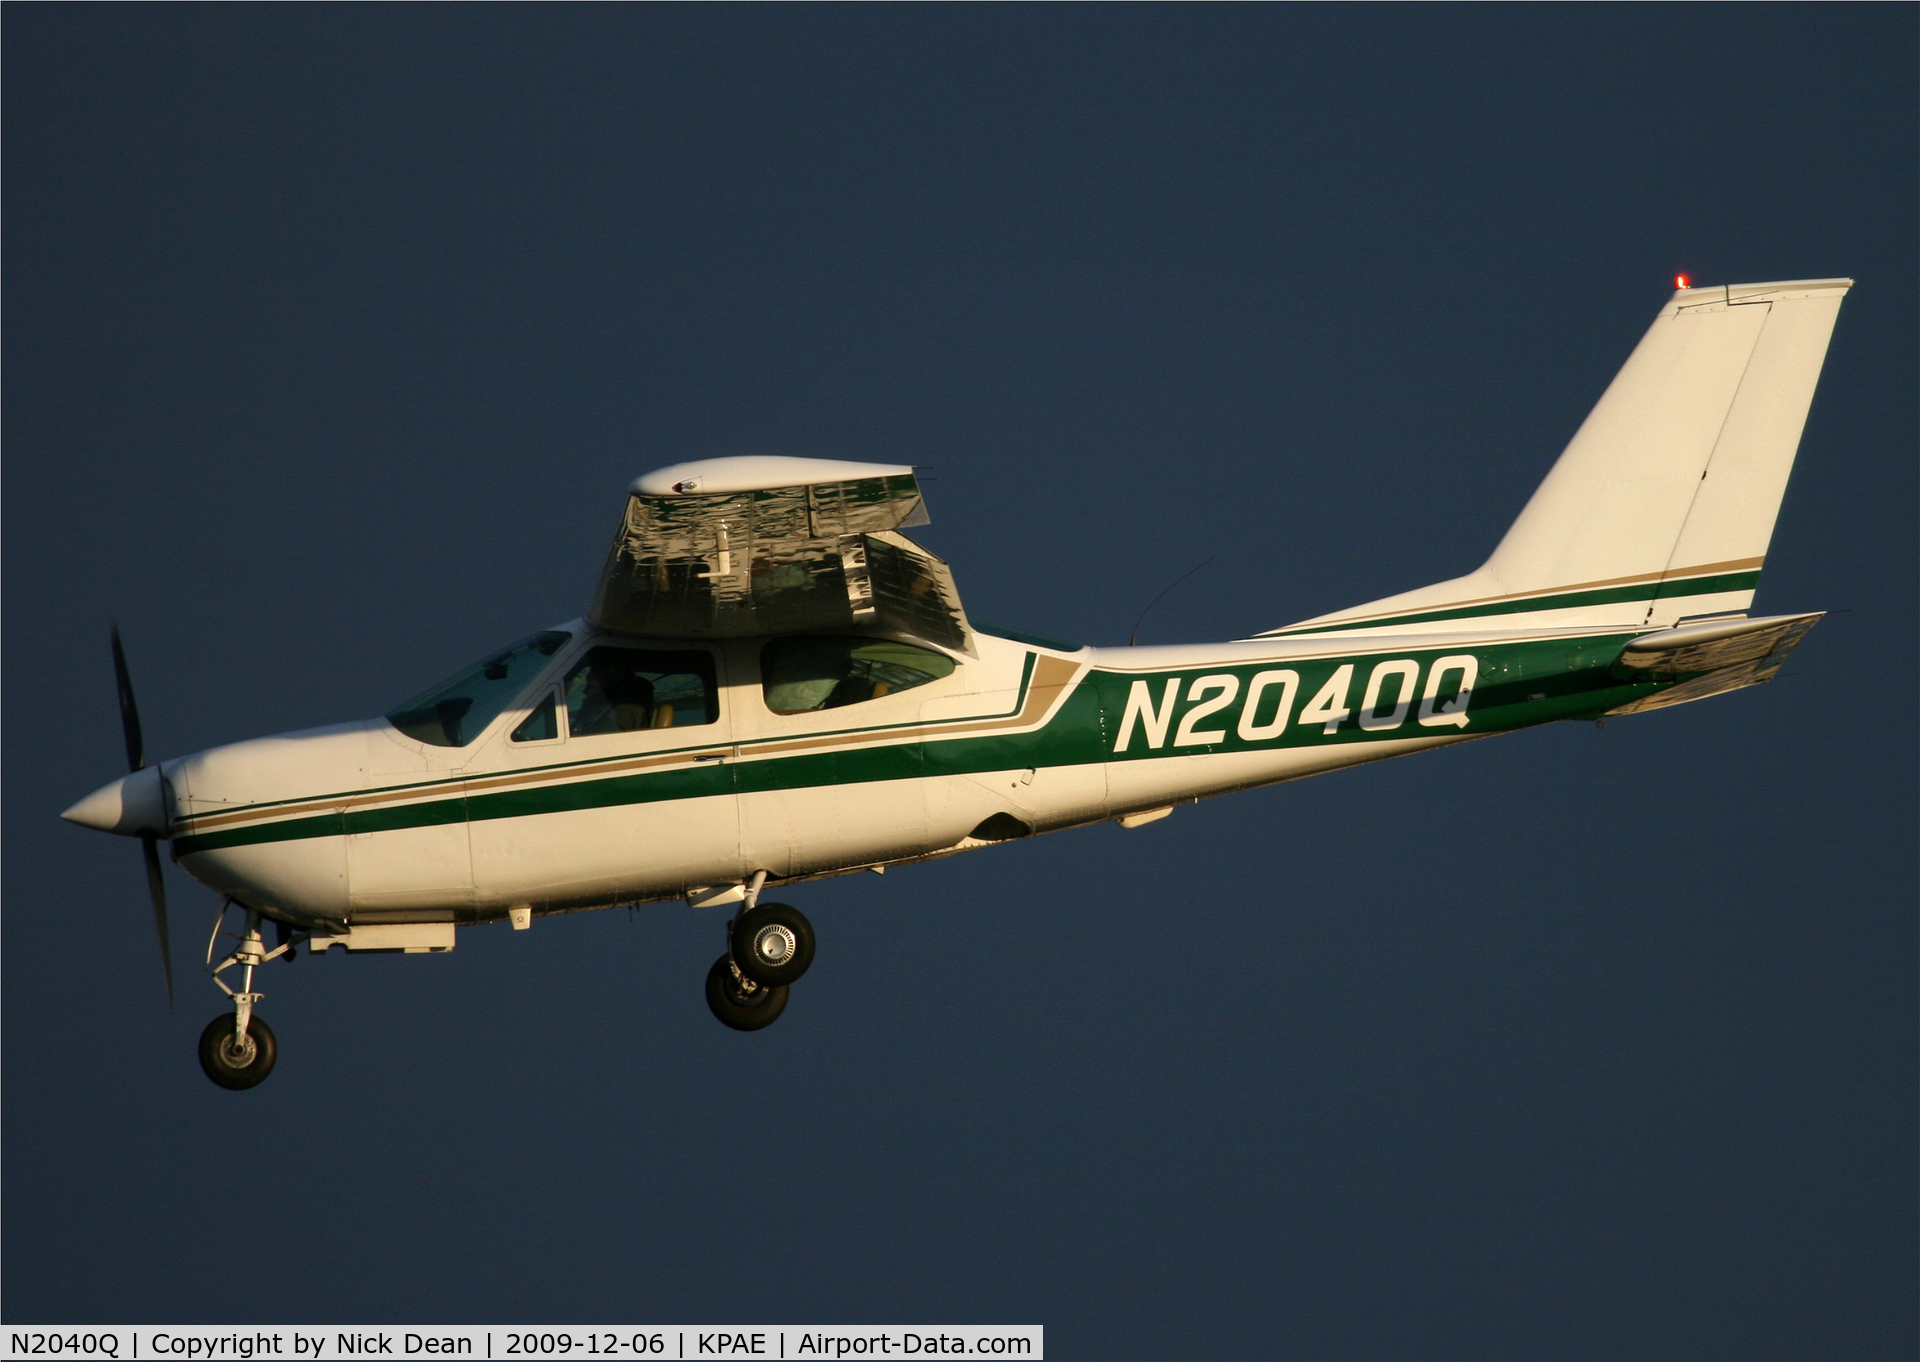 N2040Q, 1973 Cessna 177RG Cardinal C/N 177RG0440, KPAE